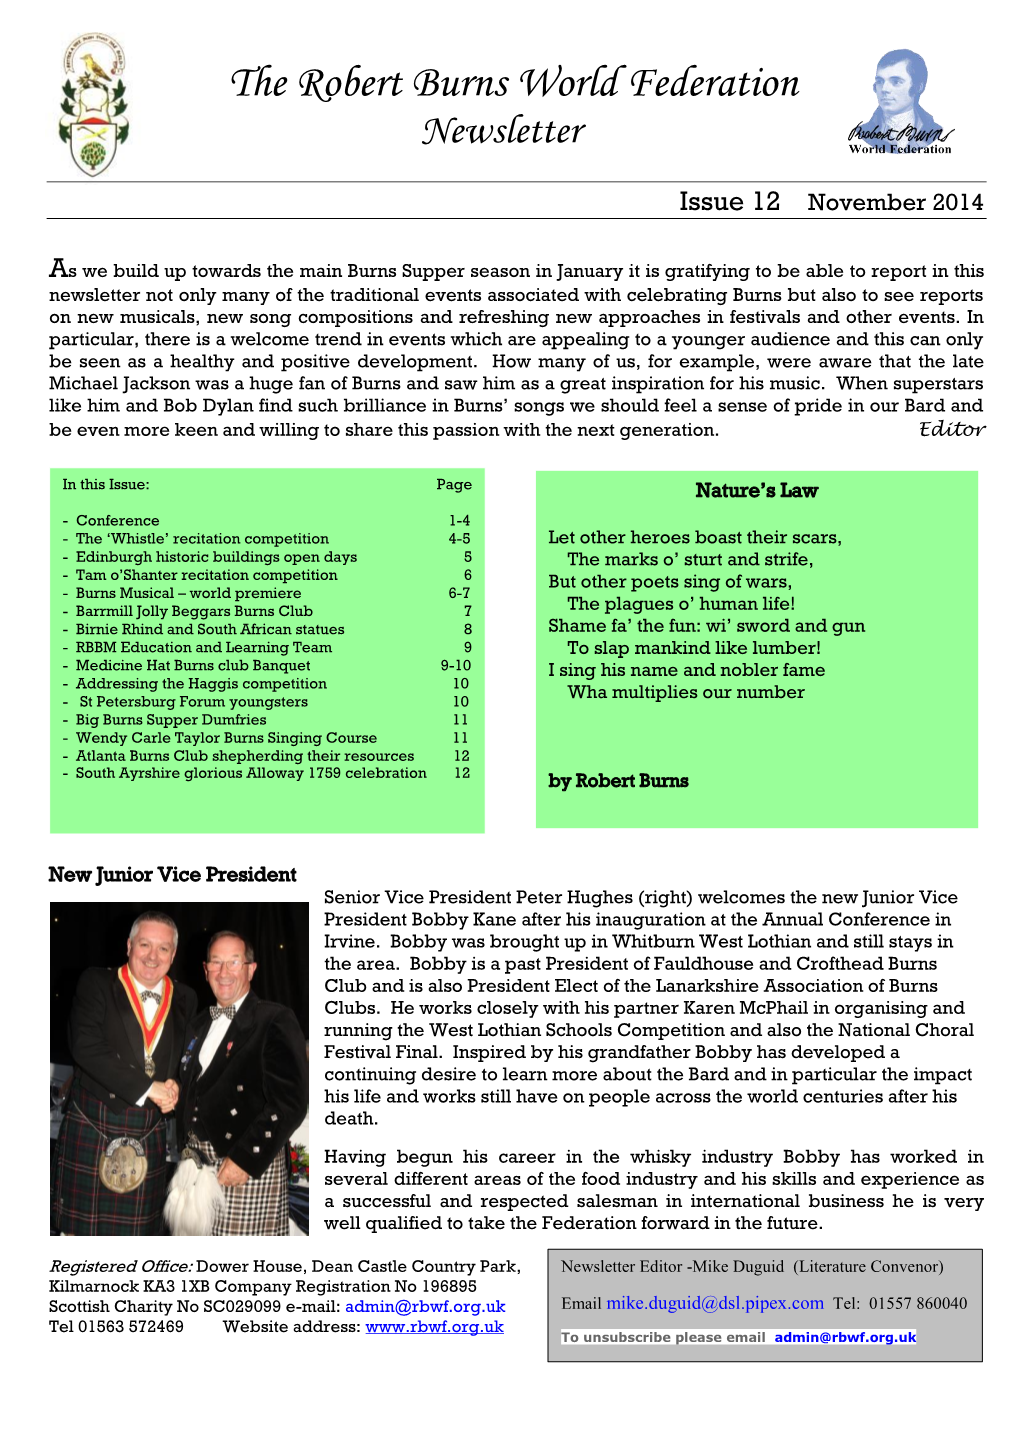 RBWF Newsletter November 2014